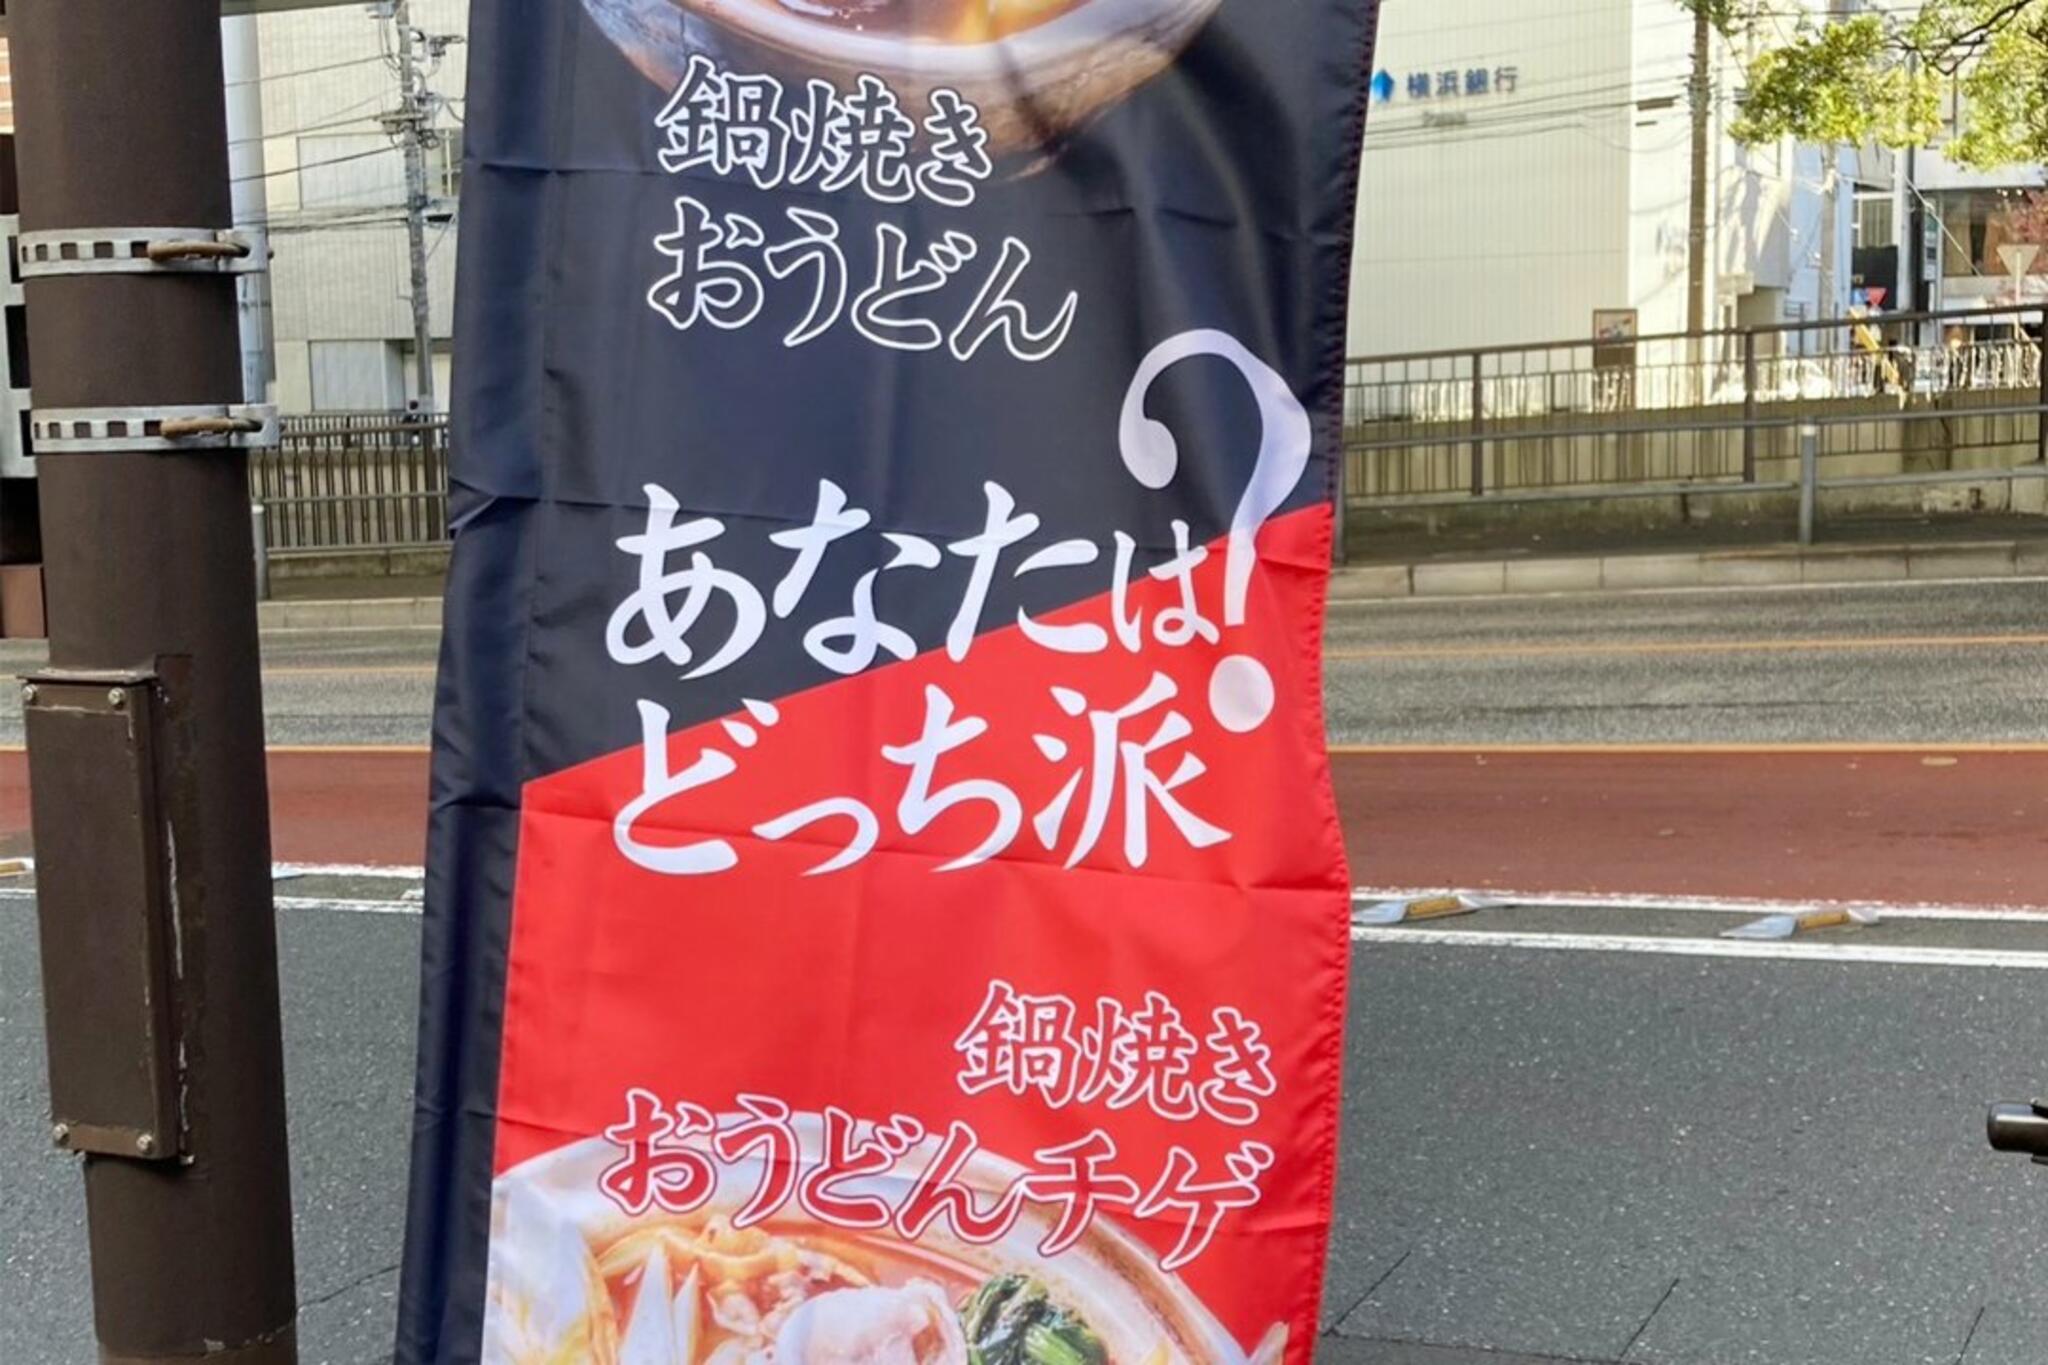 かばのおうどん 横浜元町本店からのお知らせ(鍋焼きおうどん「のぼり」を新調しました)に関する写真